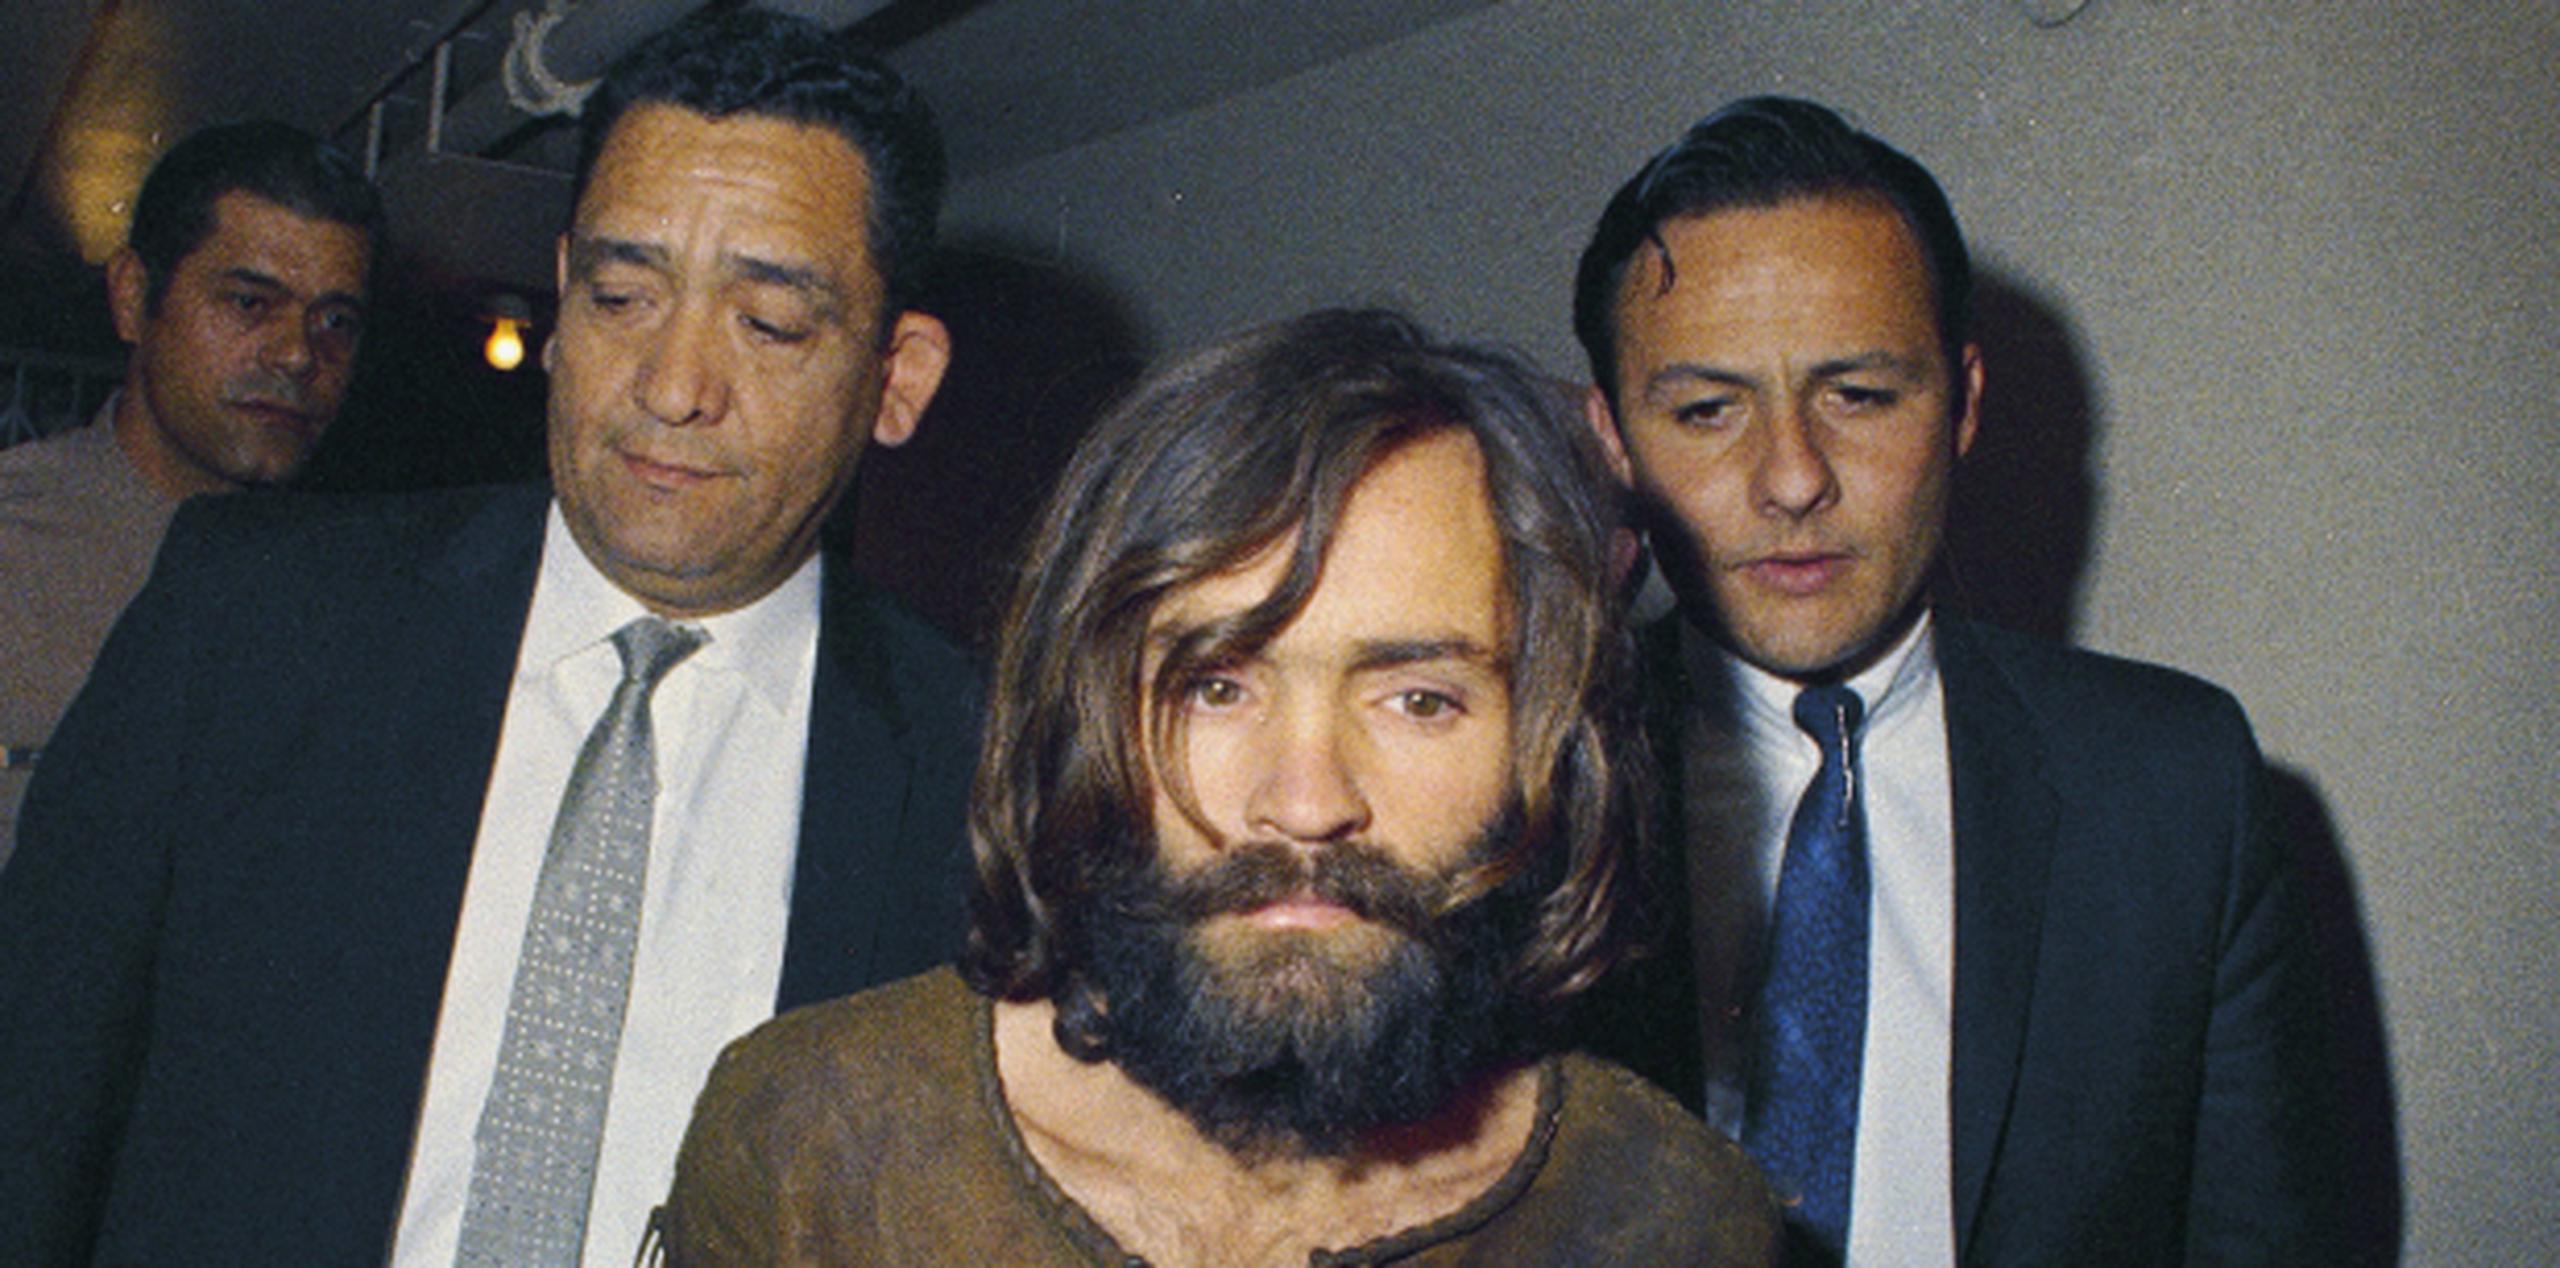 Manson escoltado por oficiales de seguridad tras su arresto en 1969. (AP)